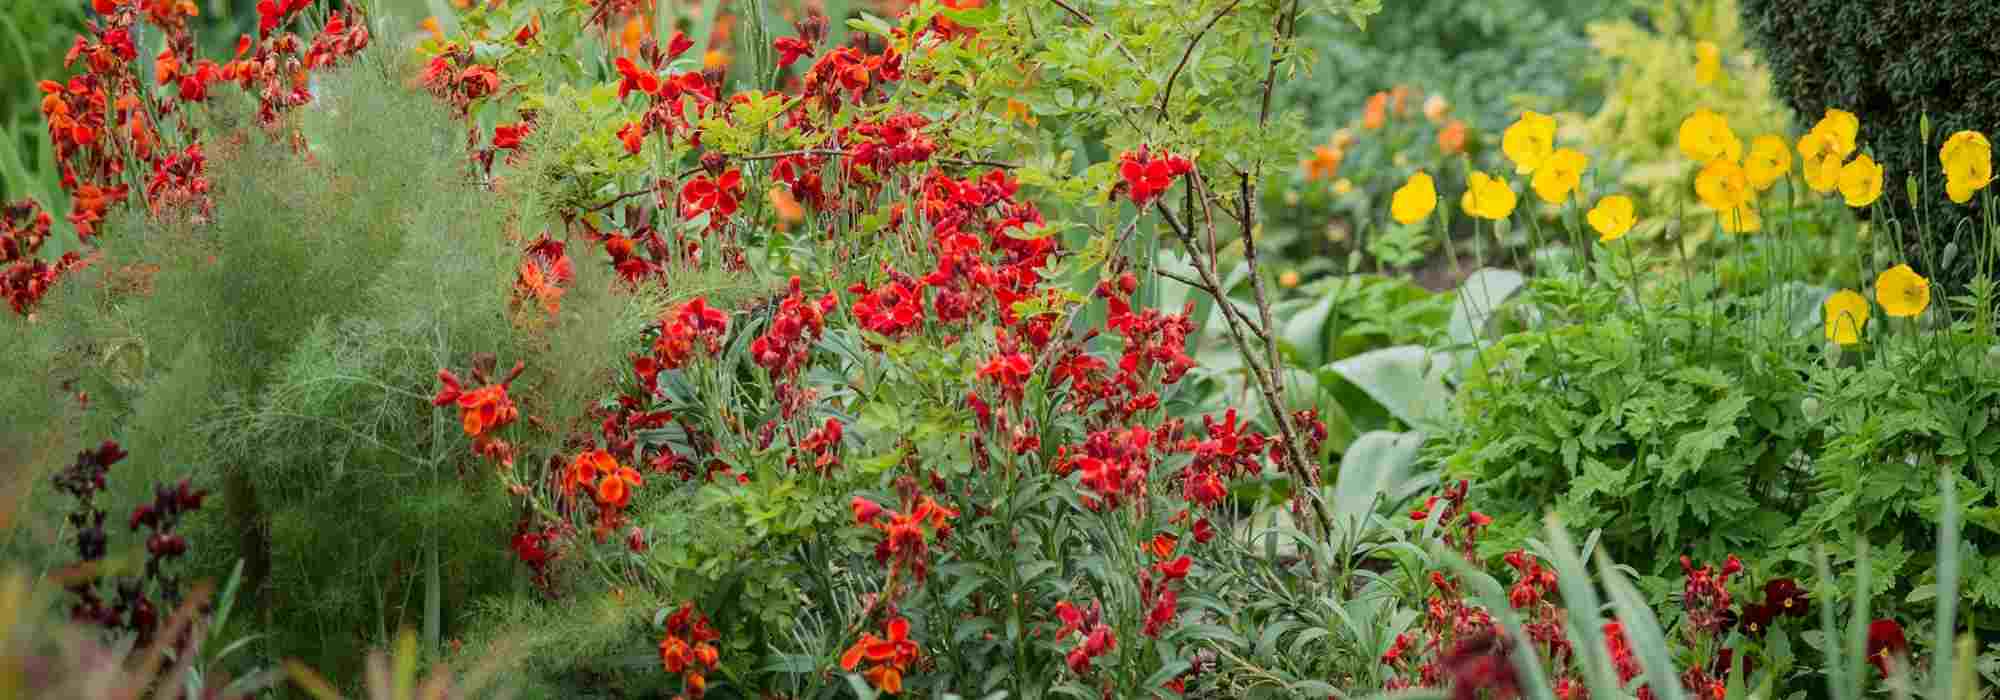 Rendre son jardin accueillant pour le Rouge-gorge - Promesse de Fleurs